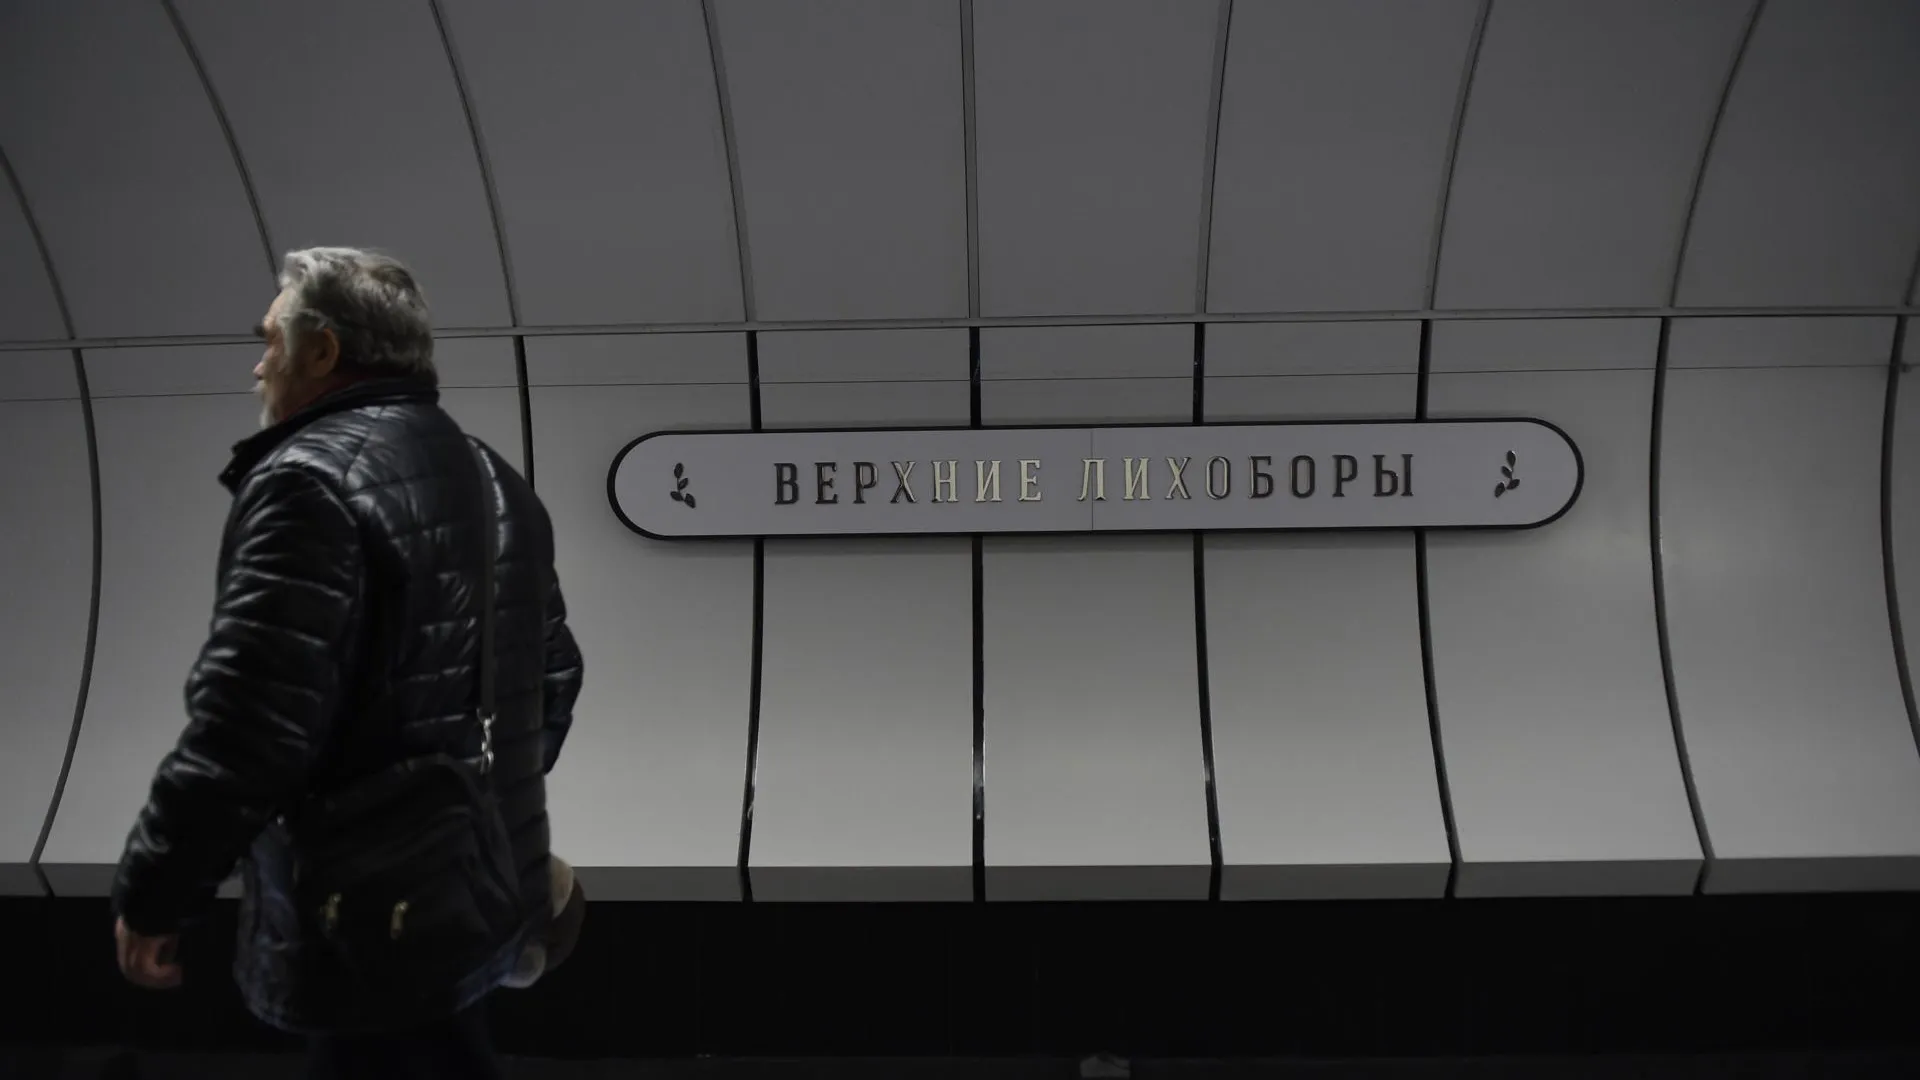 Бочкарев: транспортный хаб «Верхние Лихоборы» в Москве построят к 2025 году